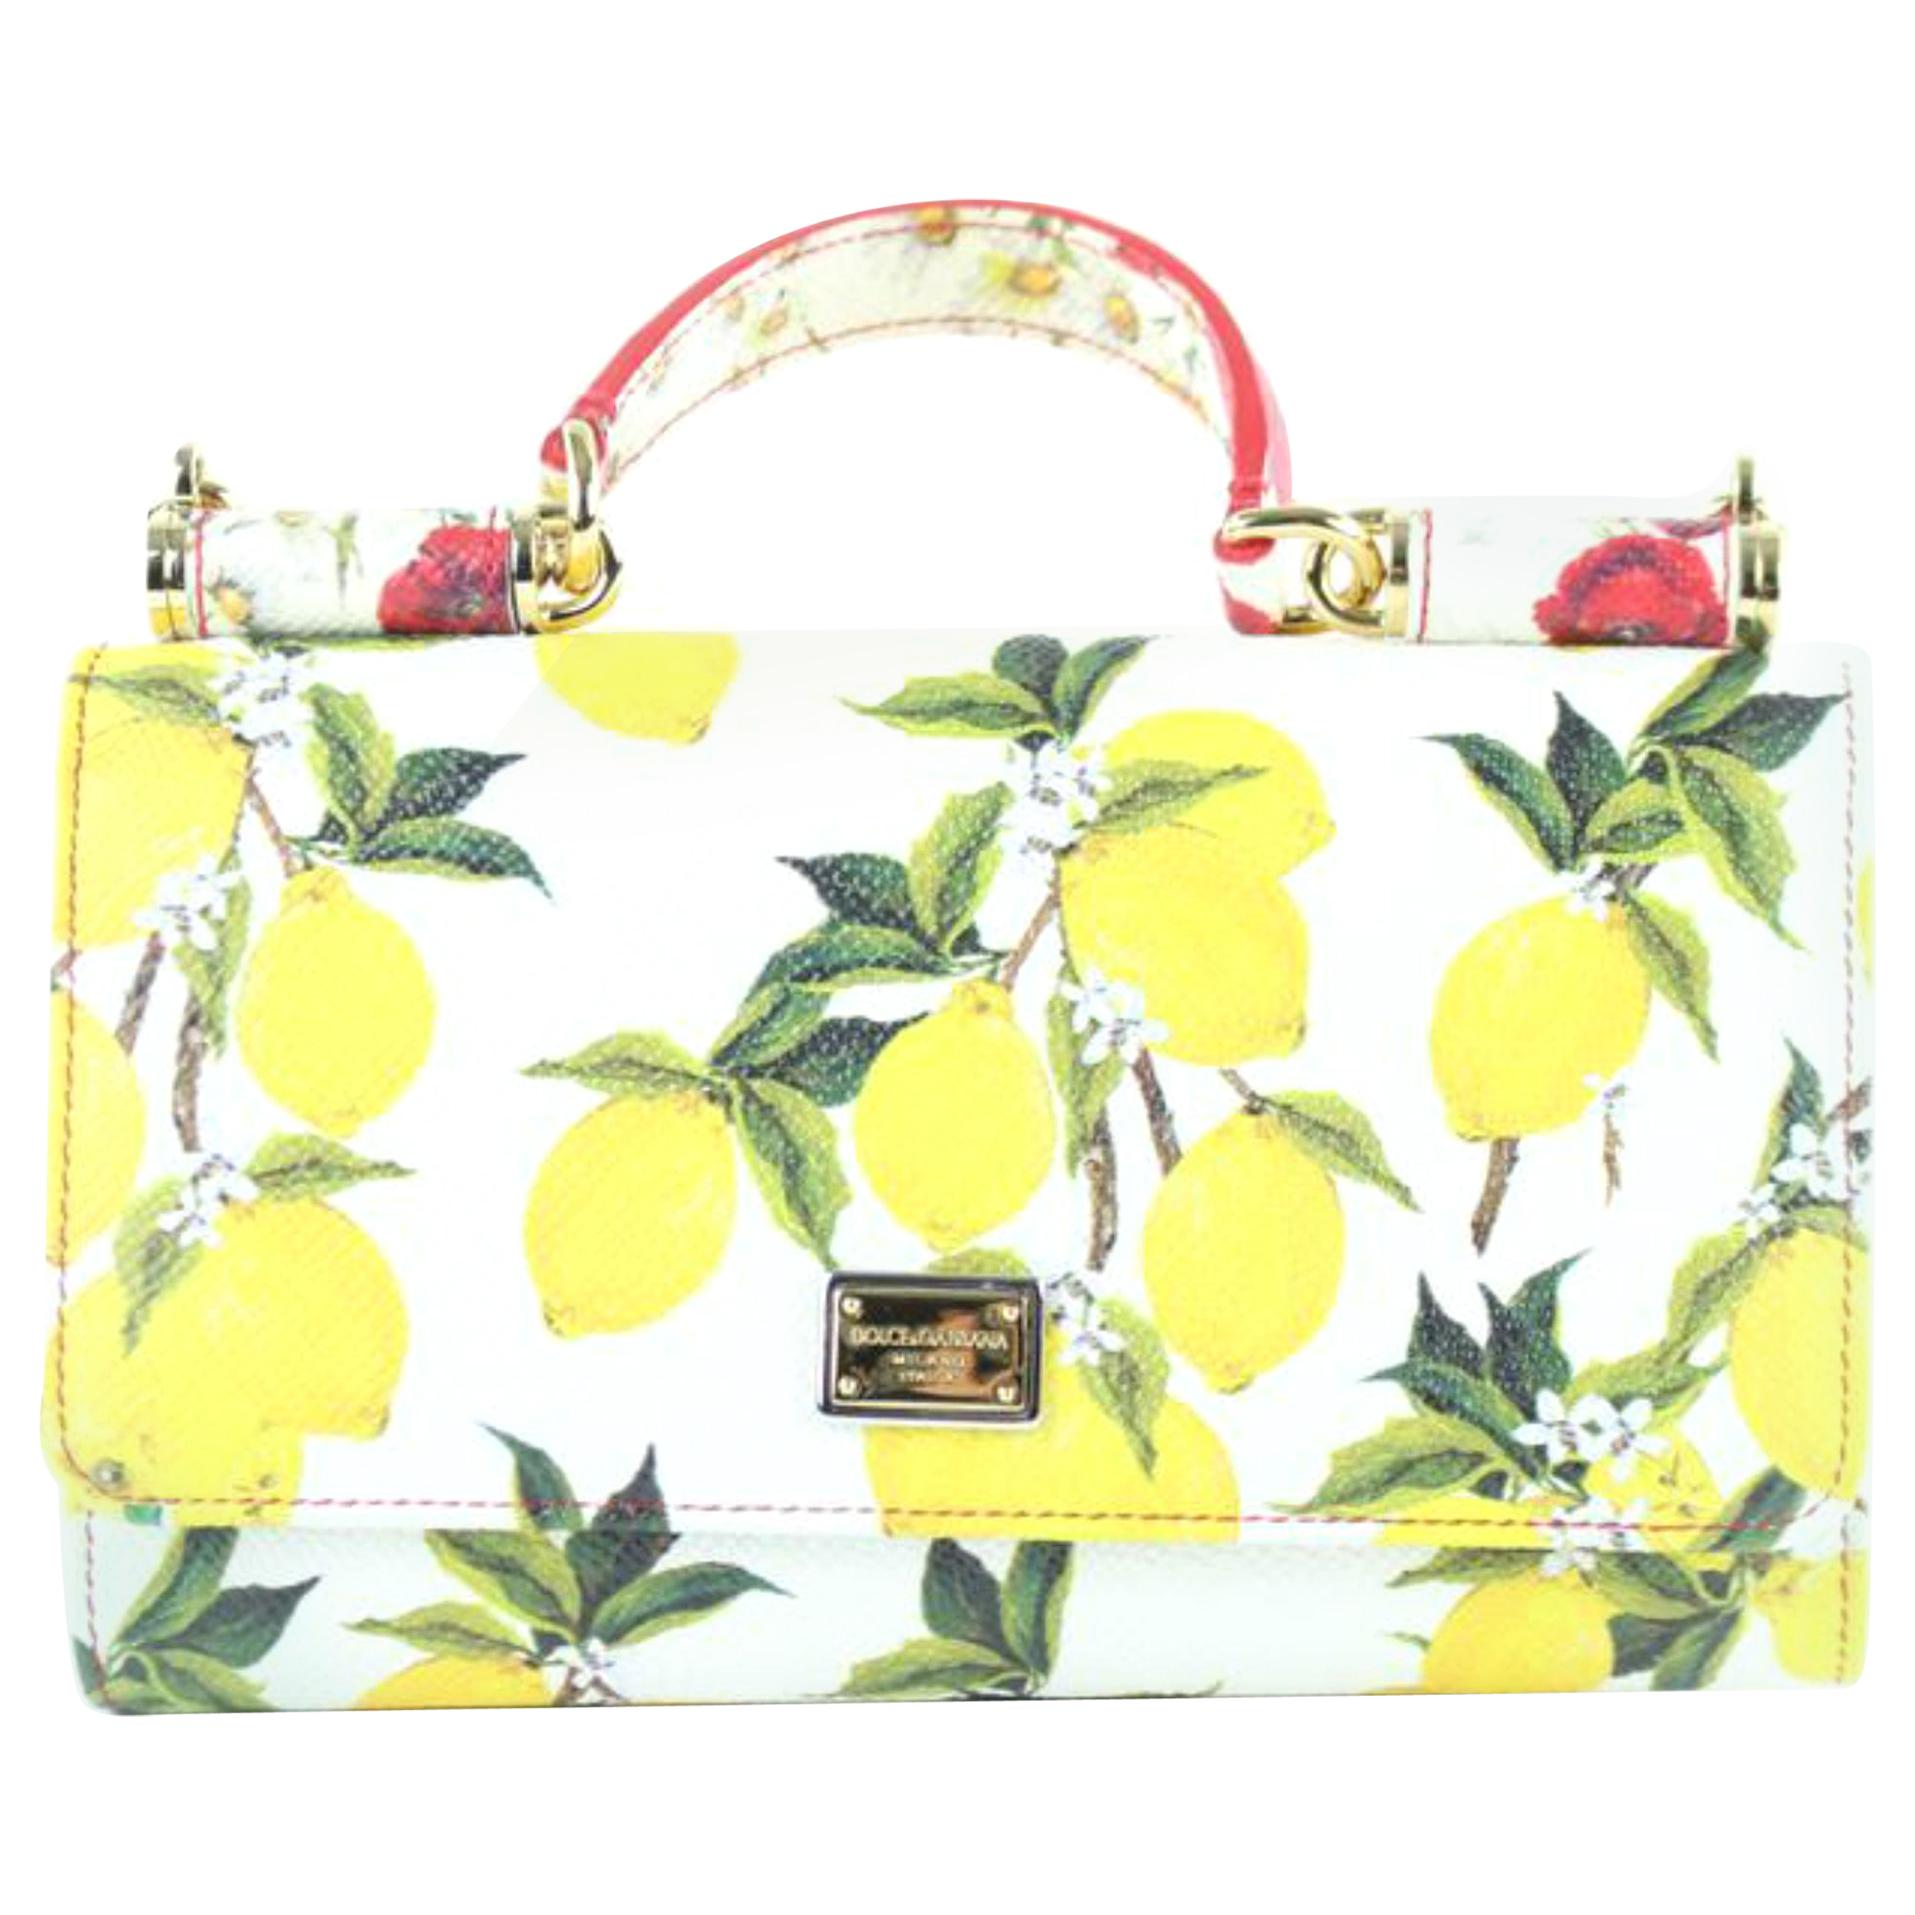 Dolce&Gabbana Chain Bag Lemon Motif Mini Sicily Von Phone 14me0110 Satchel For Sale